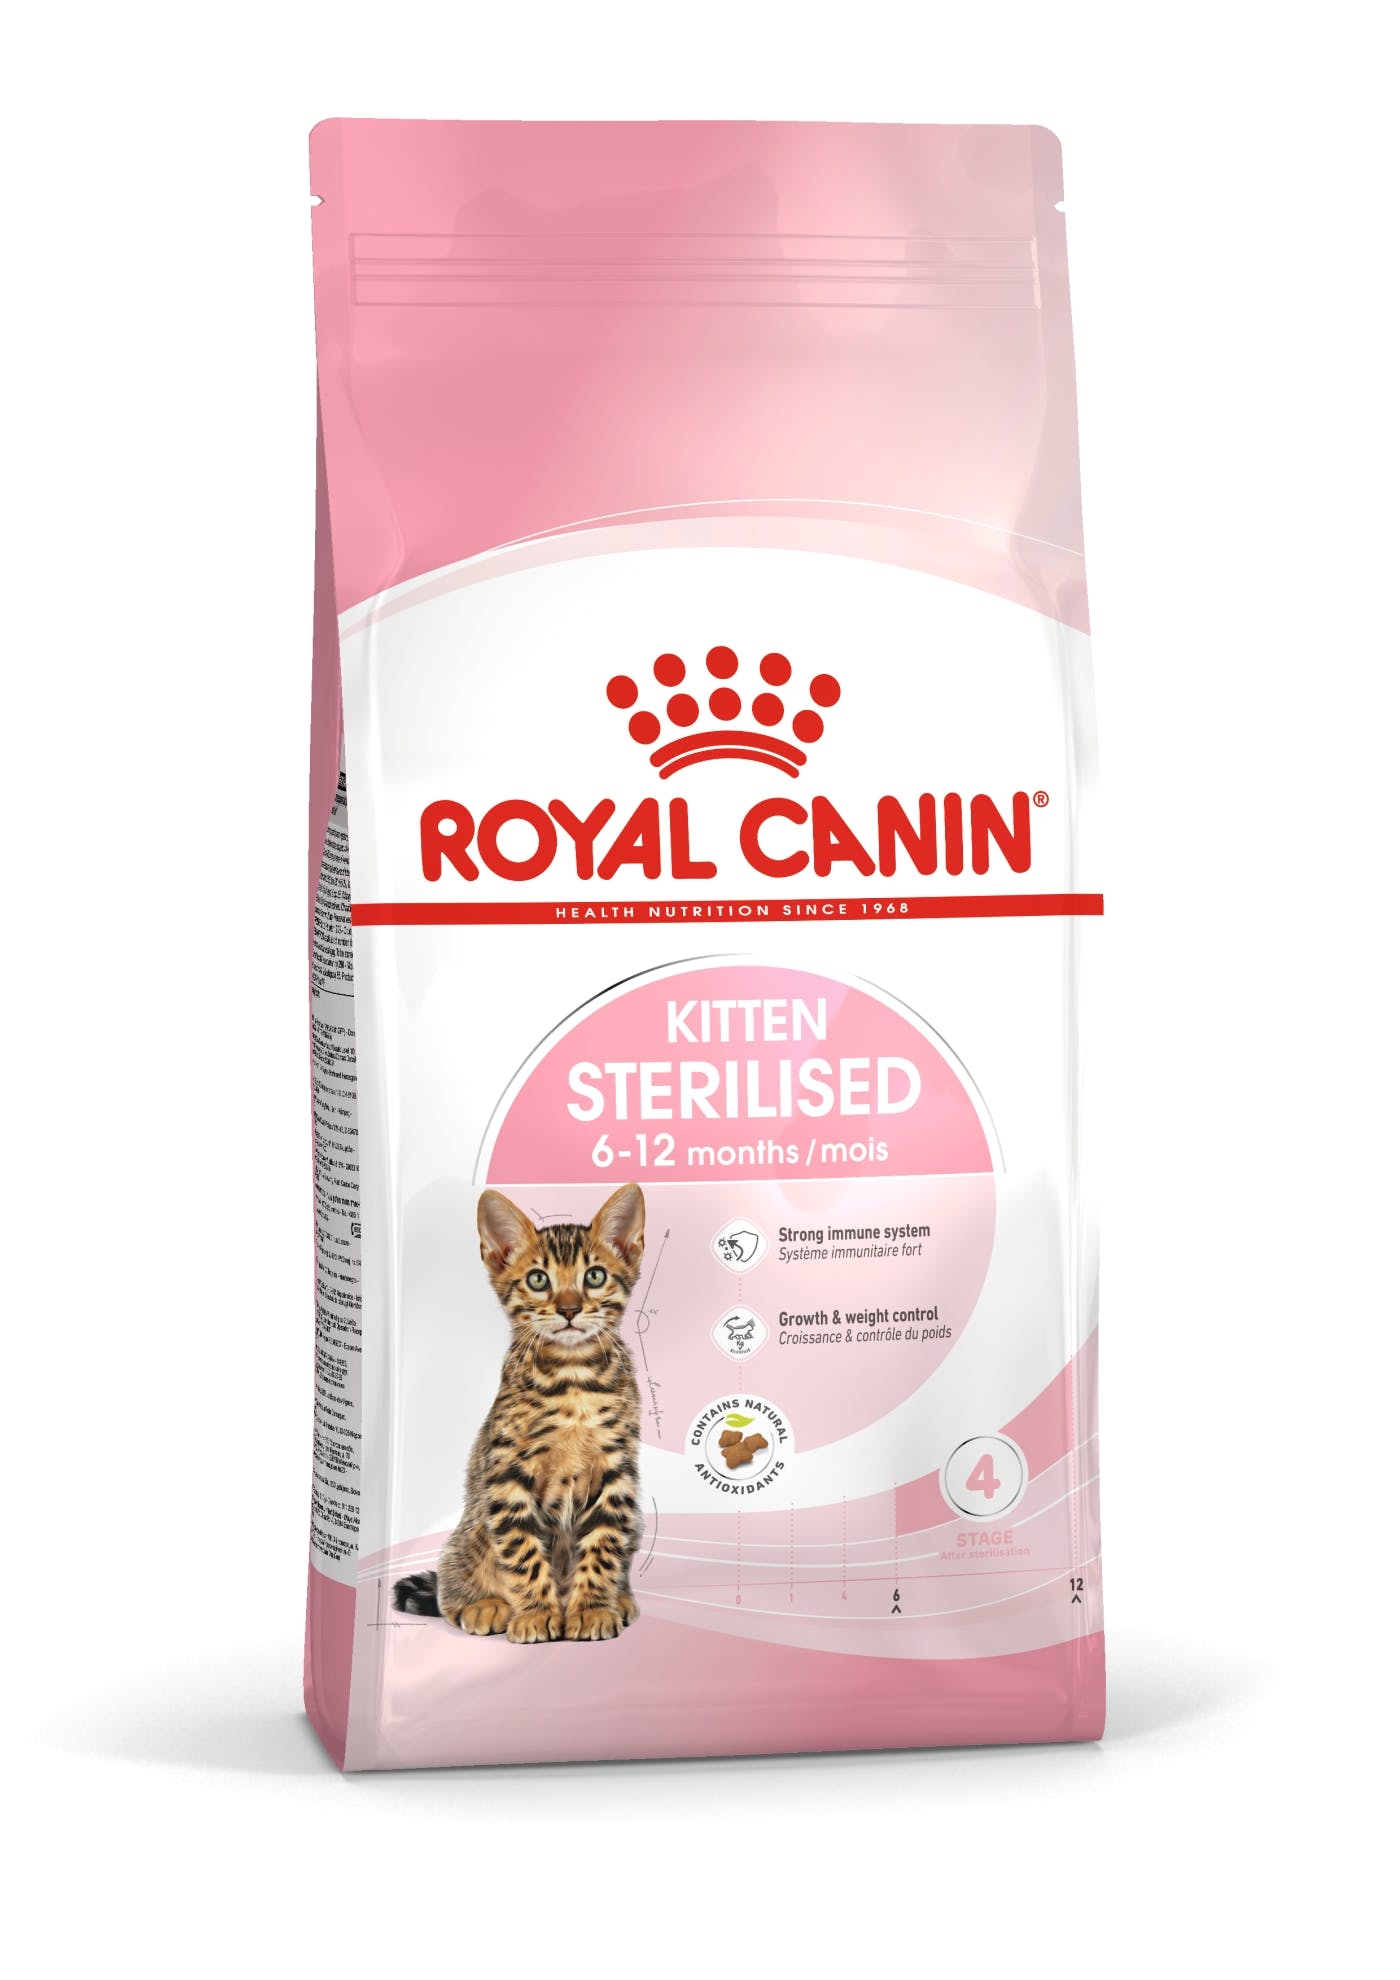 Billede af Royal Canin Kitten Sterilised til steriliserede/kastrerede killinger op til 12 måneder. 2kg. hos Alttilhundogkat.dk